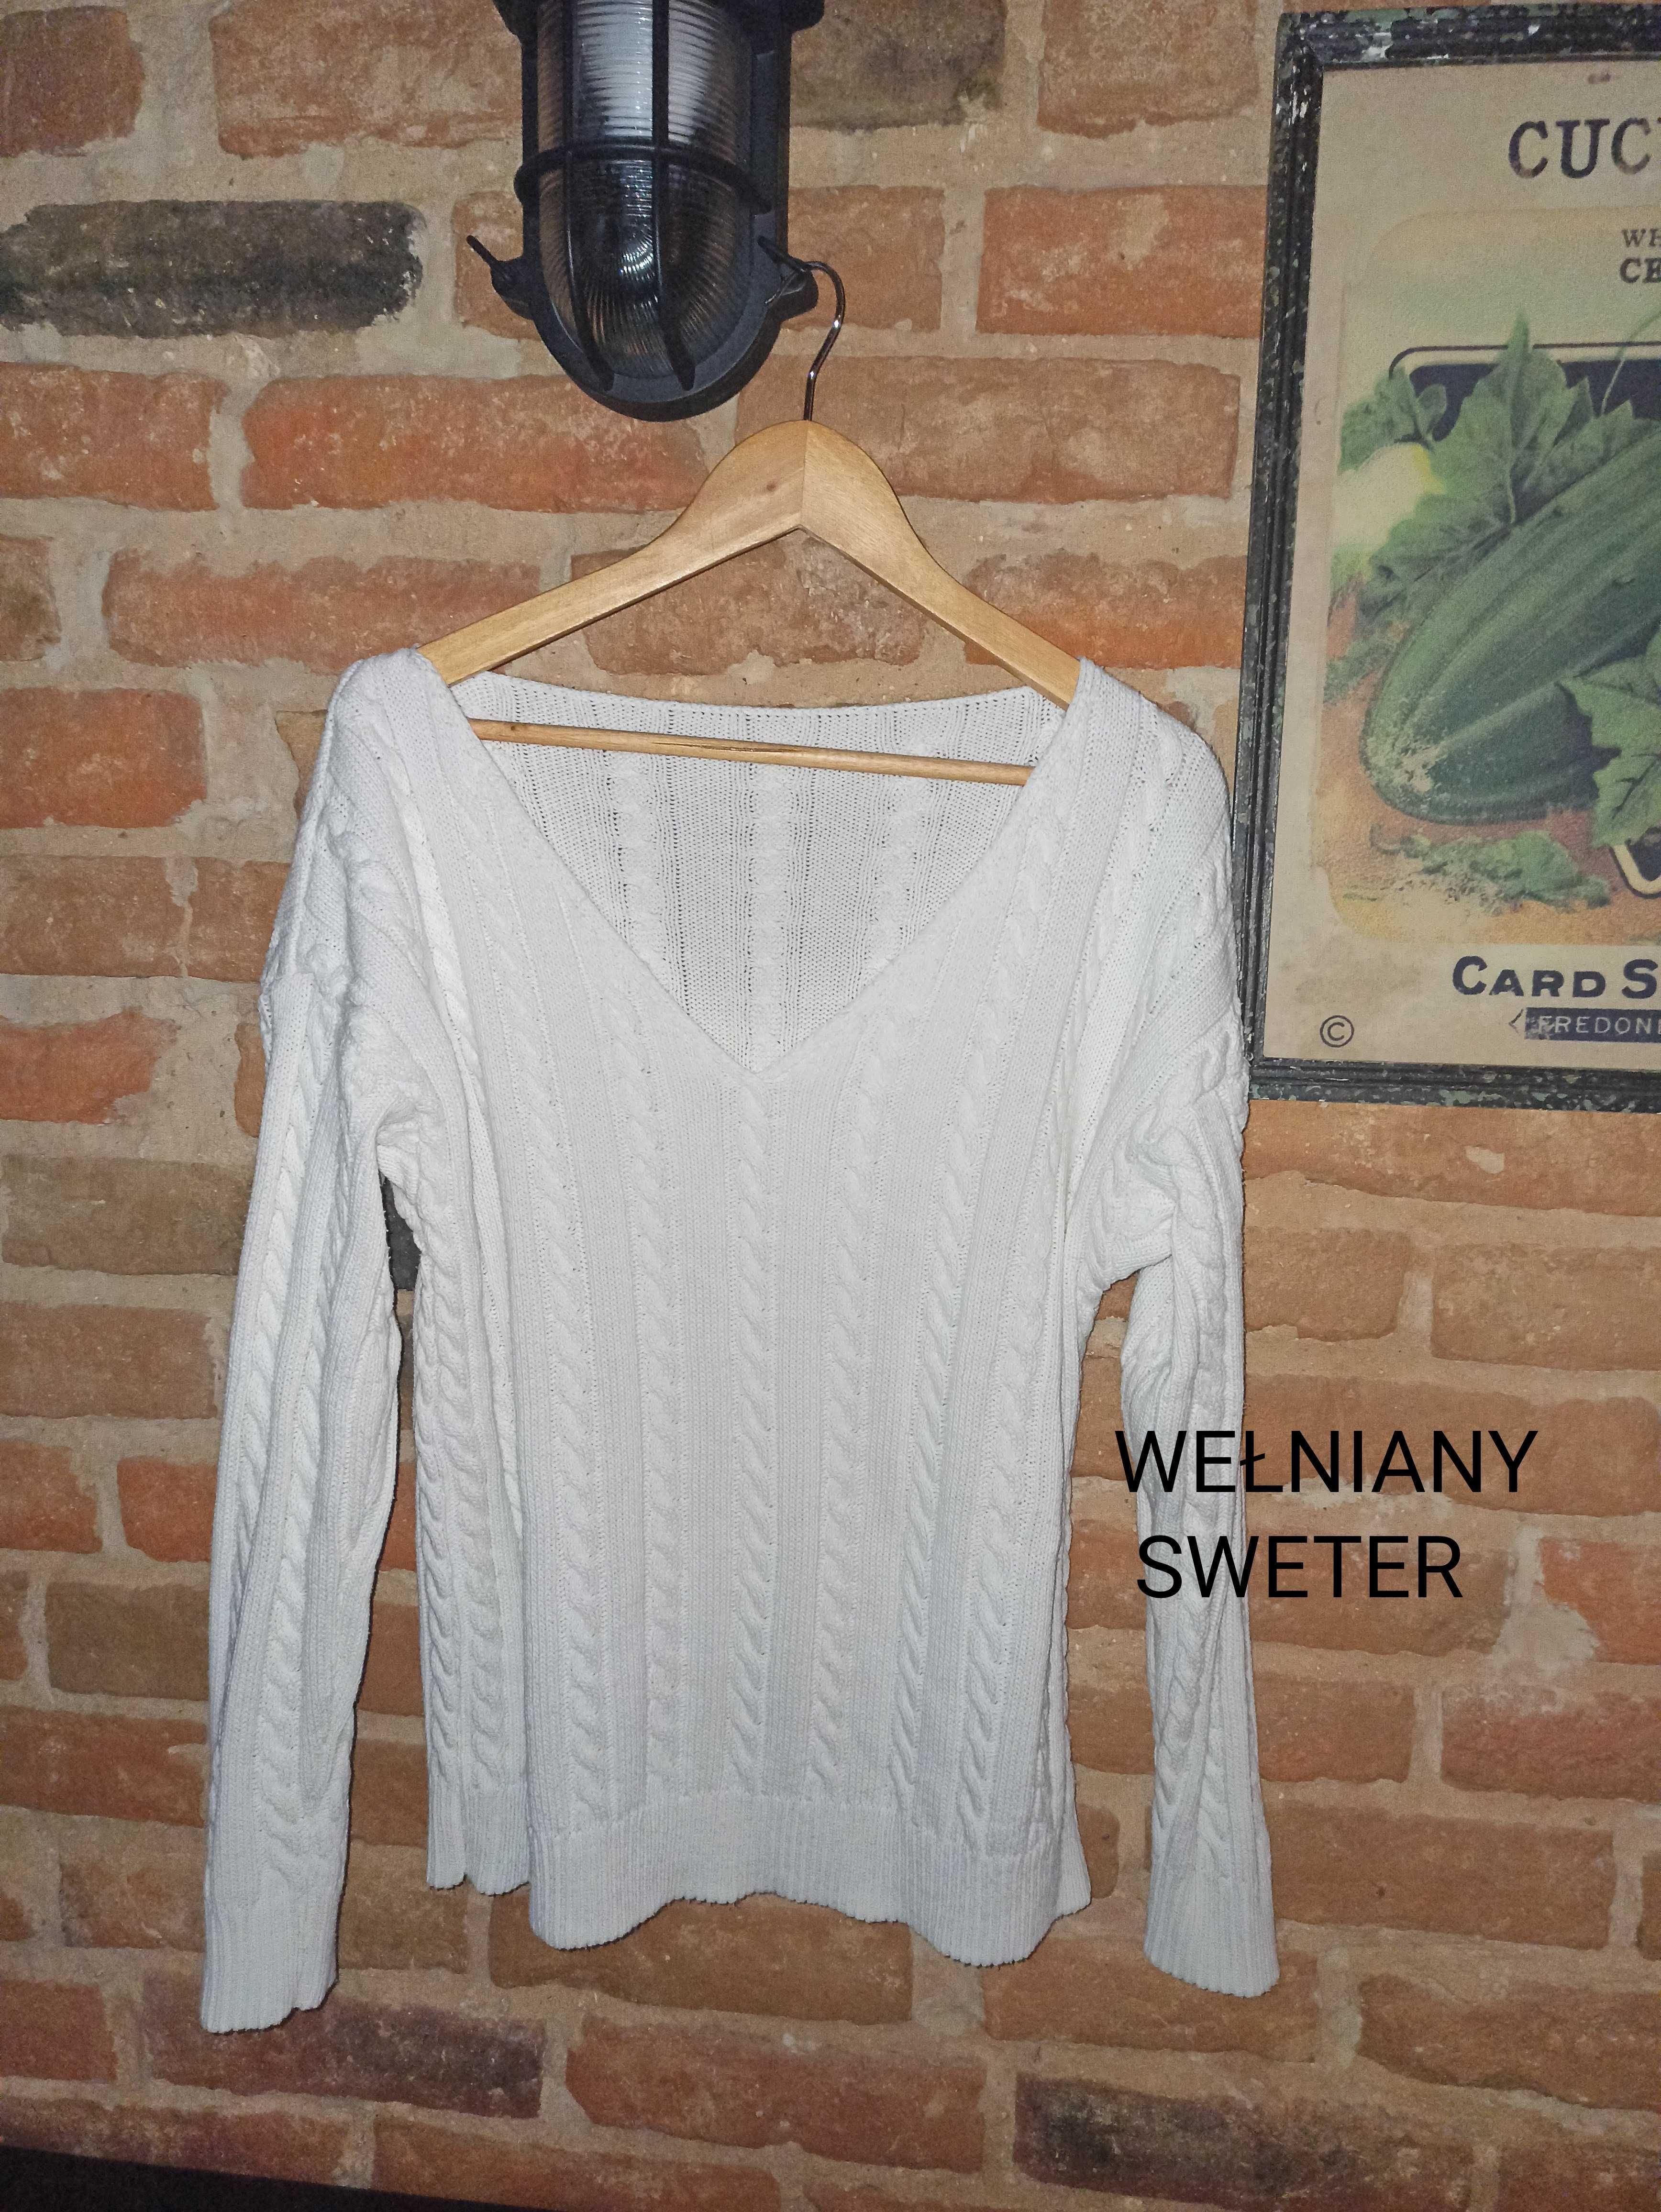 Wełniany sweter! True Vintage. Polska firma. Biały. Stan idealny